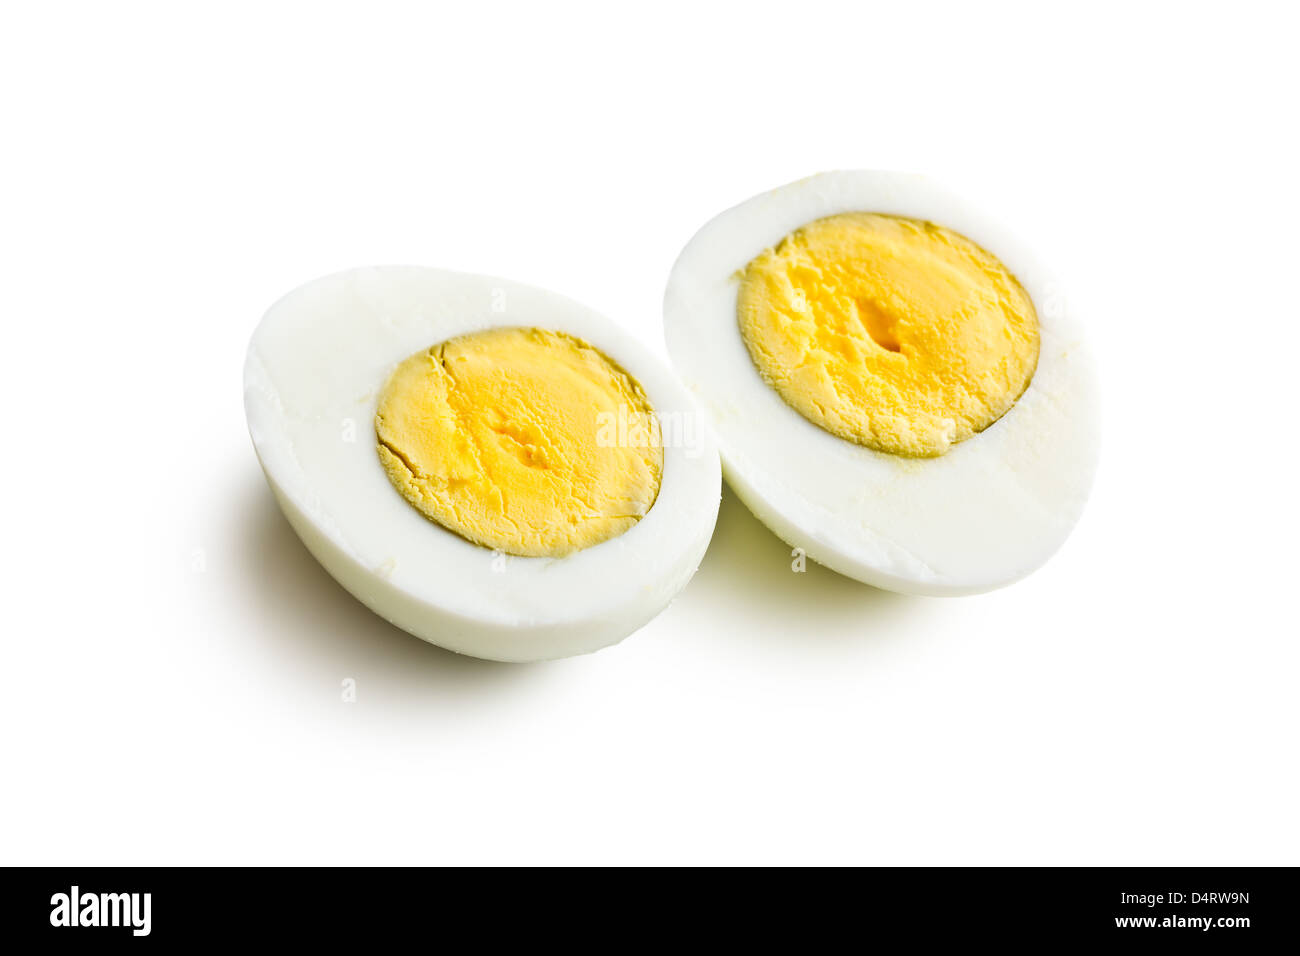 Máquina Eléctrica para Hervir Huevos al termino que gustes. ▪️Huevo duro,  mediano y suave. ▪️Capacidad para 7 Huevos. ▪️Apagado…